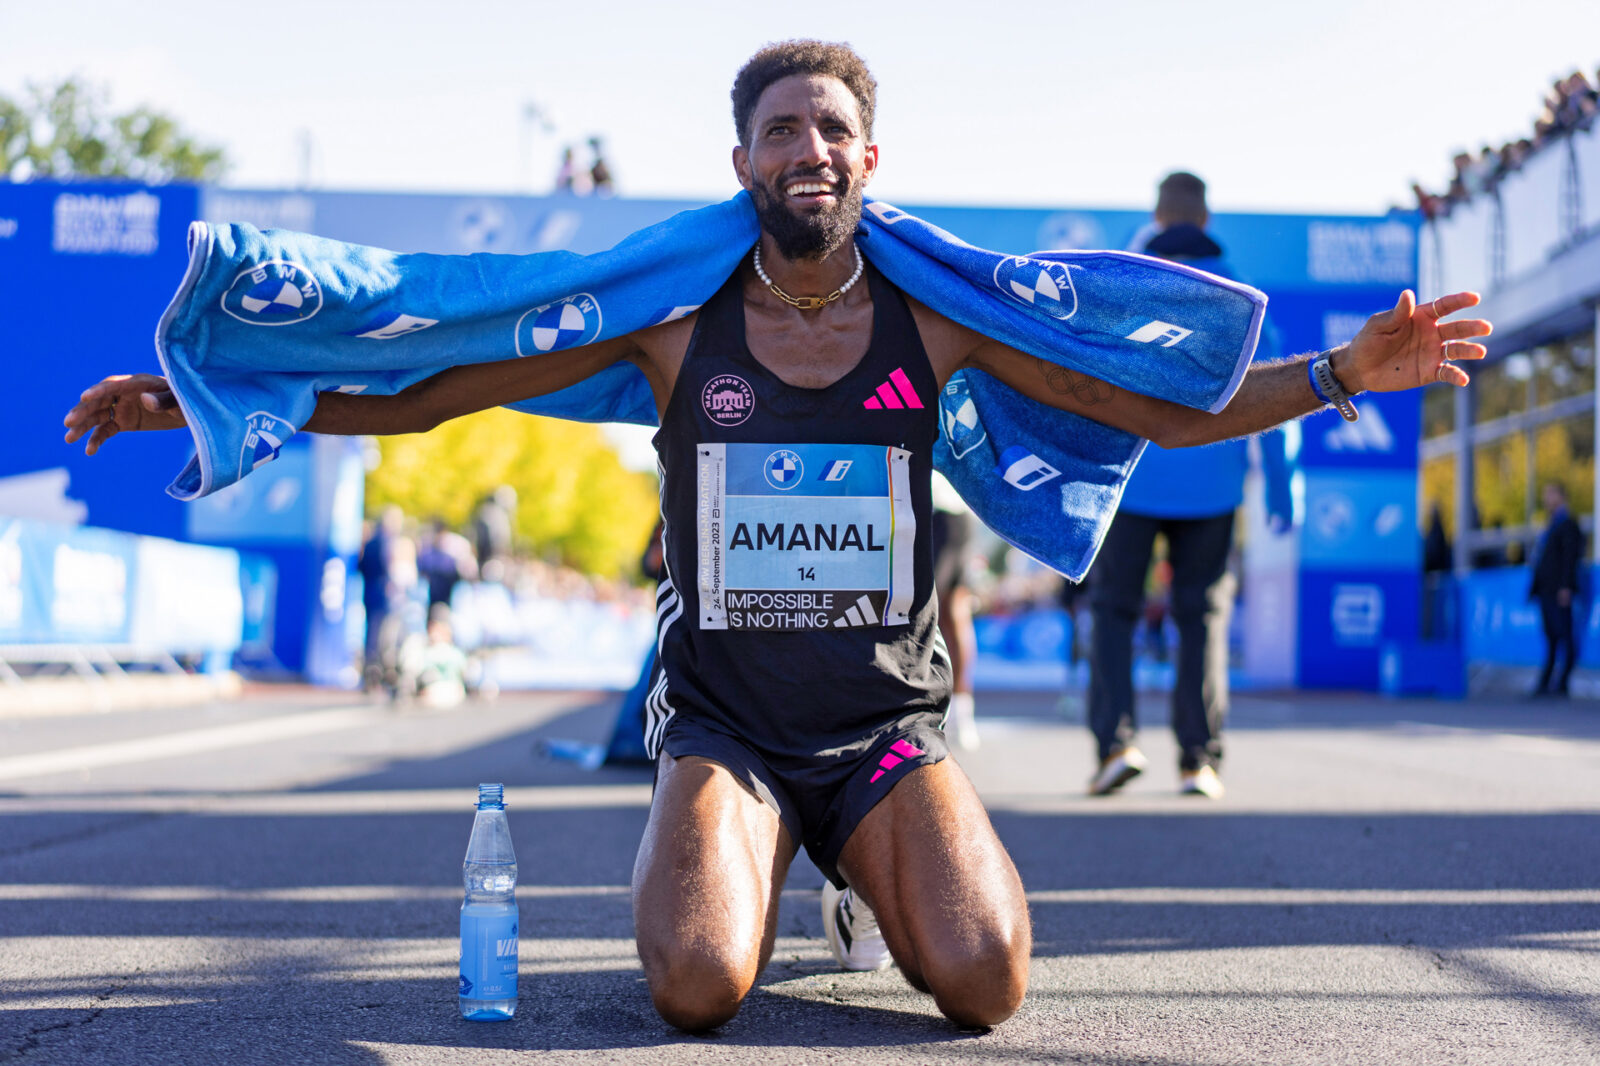 Rekorde beim Berlin-Marathon: Amanal Petros bricht deutschen Rekord